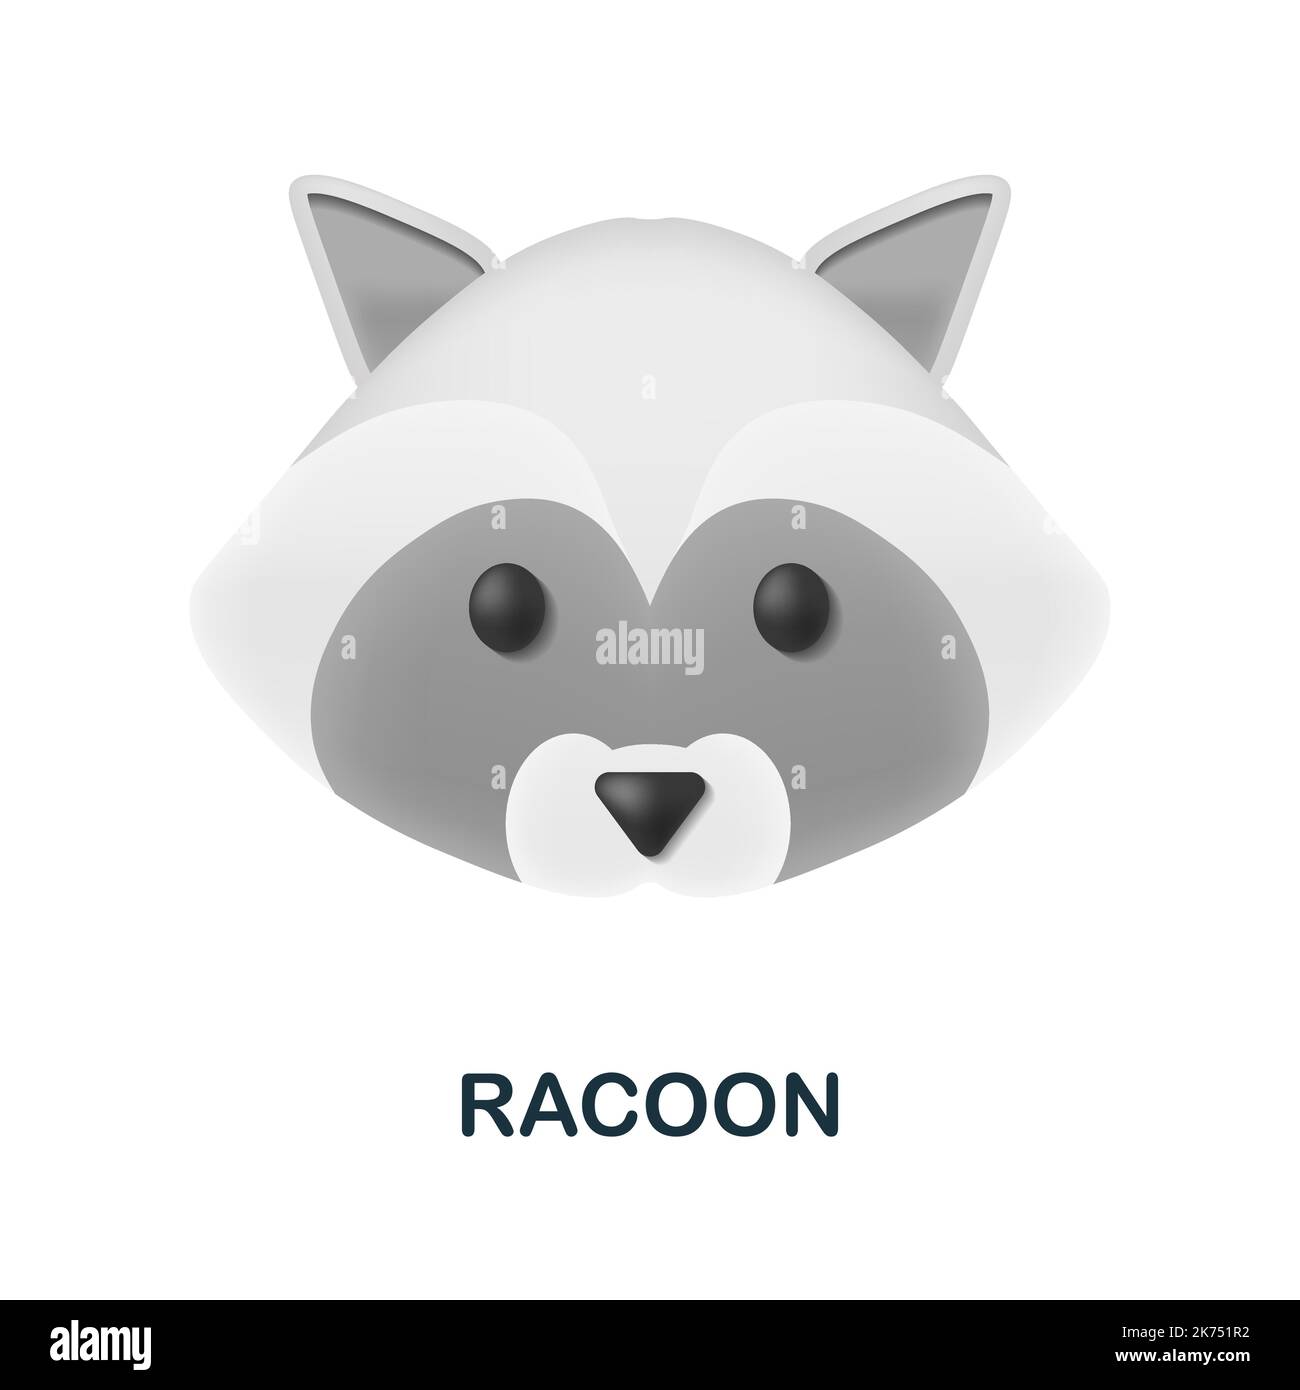 Racoon-Symbol. 3D Illustration aus der Tierkopfsammlung. Creative Racoon 3D Icon für Webdesign, Templates, Infografiken und mehr Stock Vektor